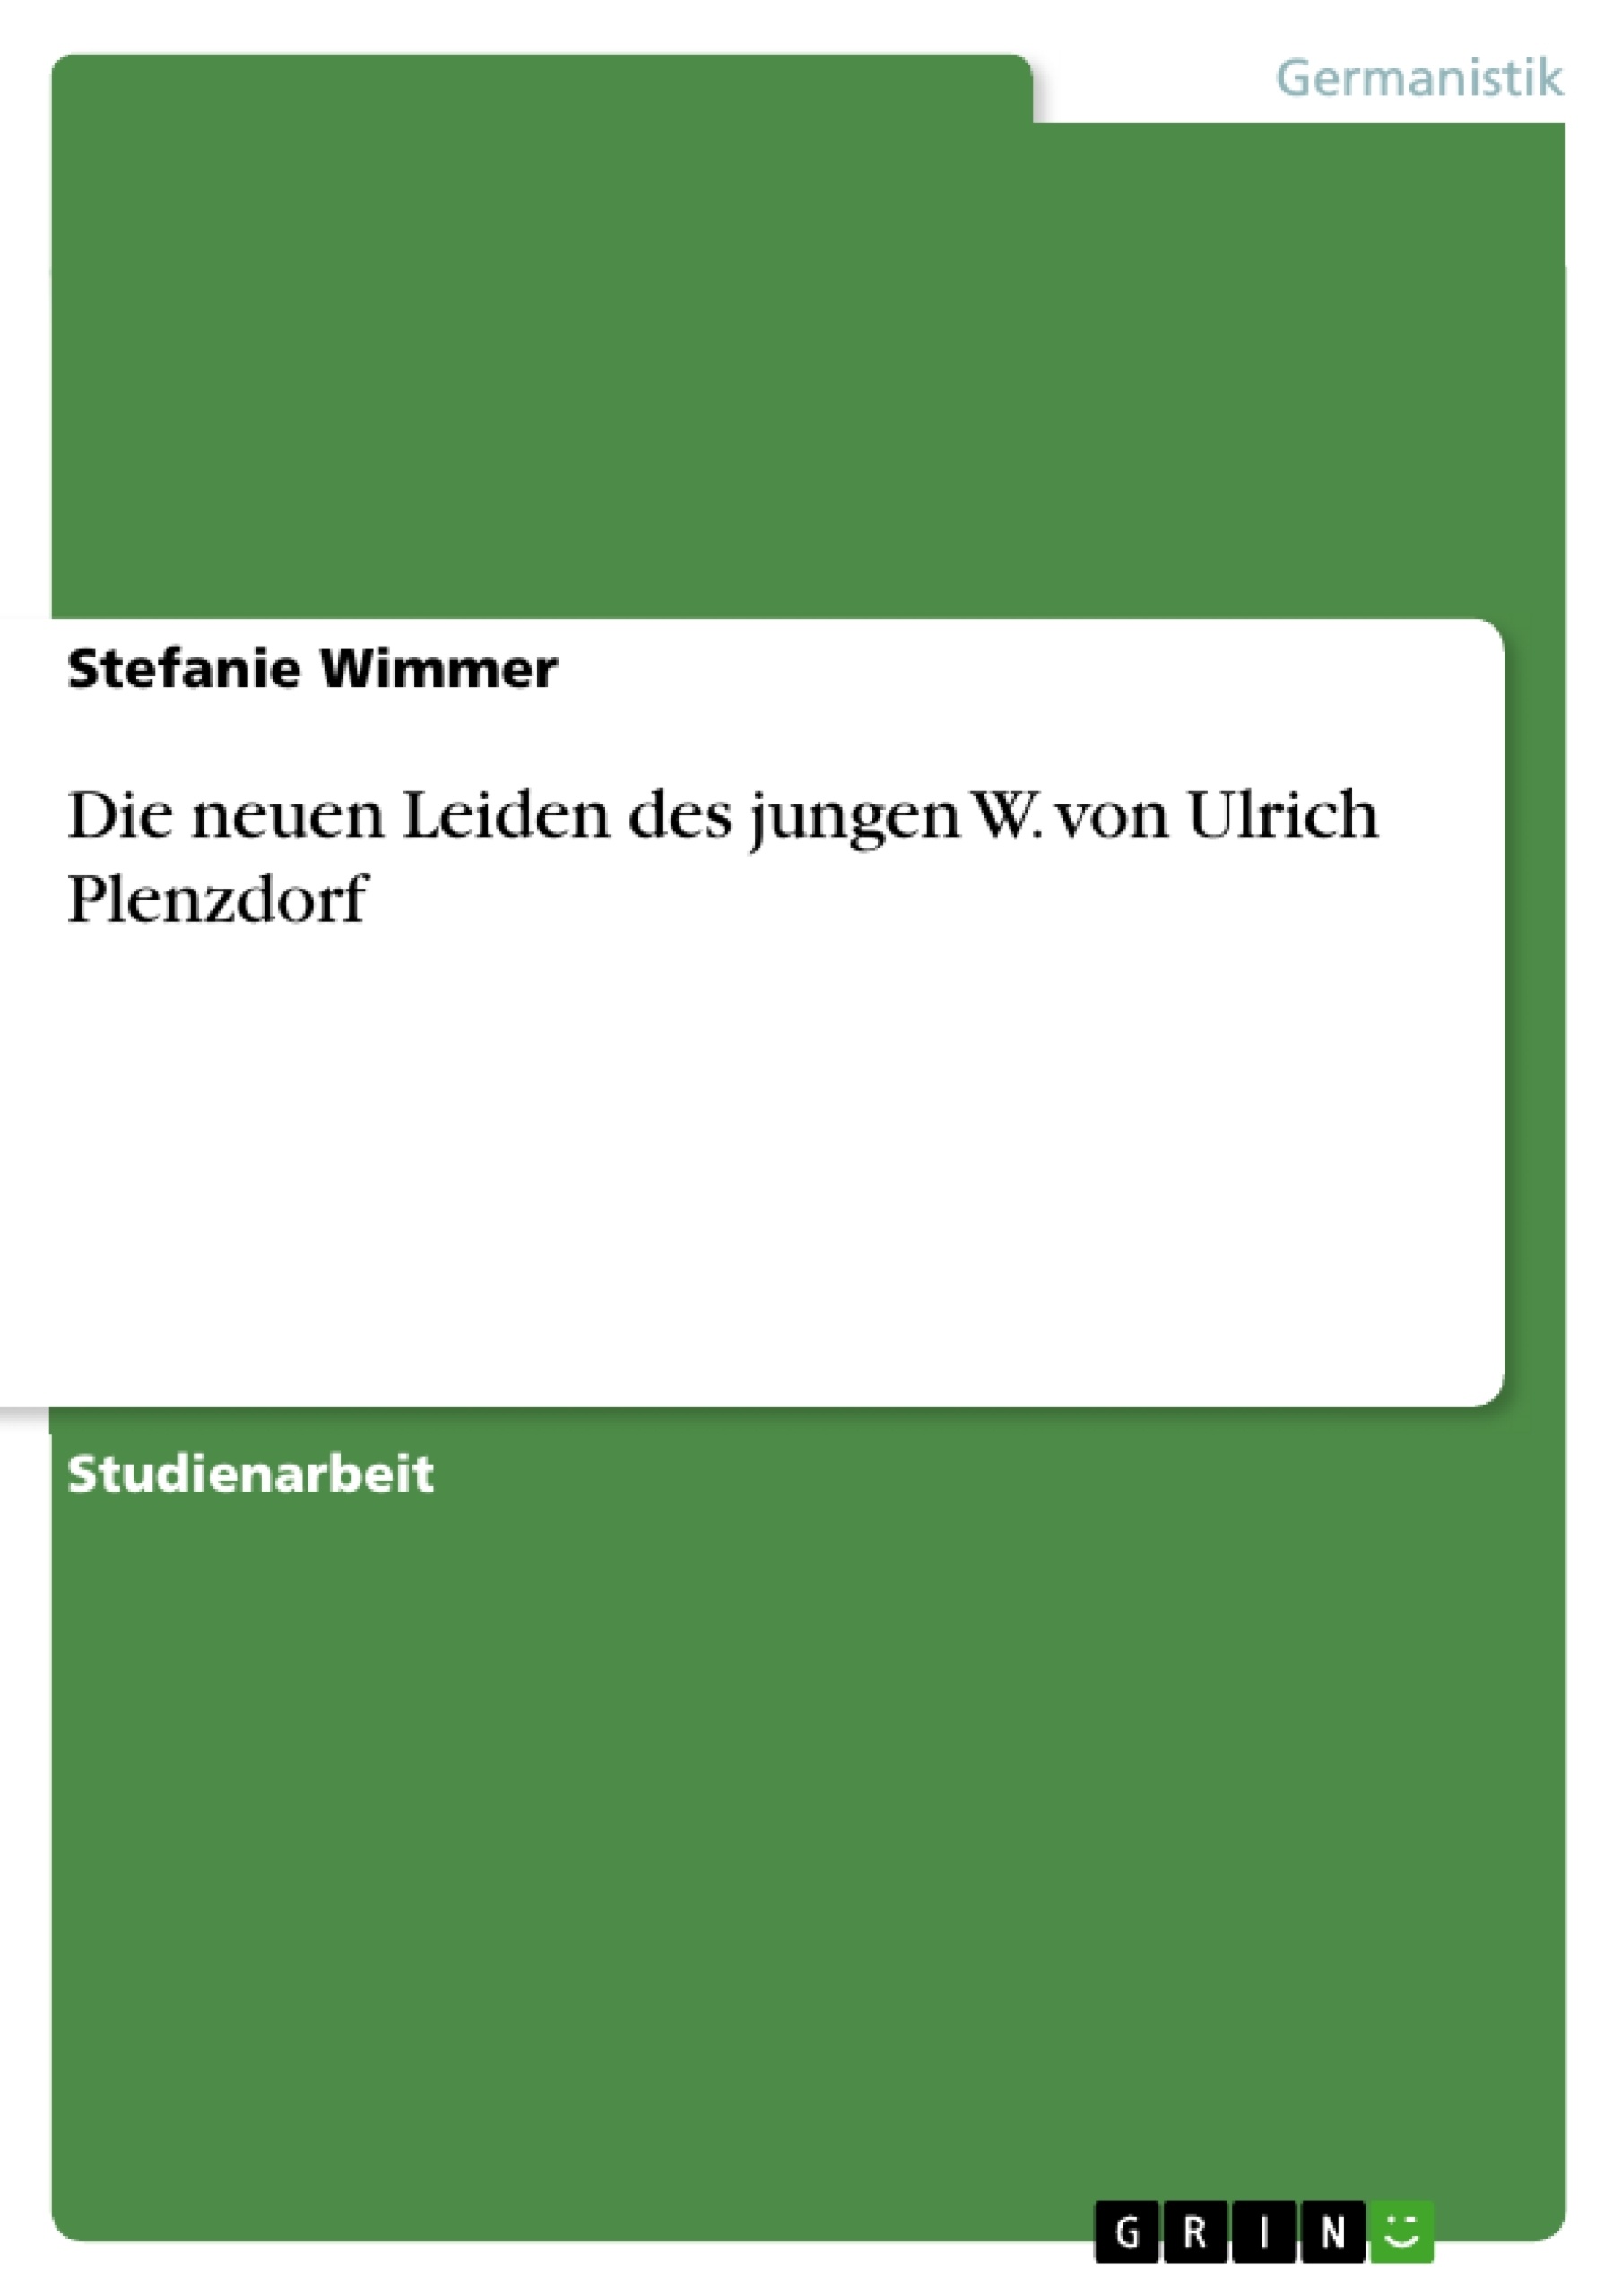 Título: Die neuen Leiden des jungen W. von Ulrich Plenzdorf